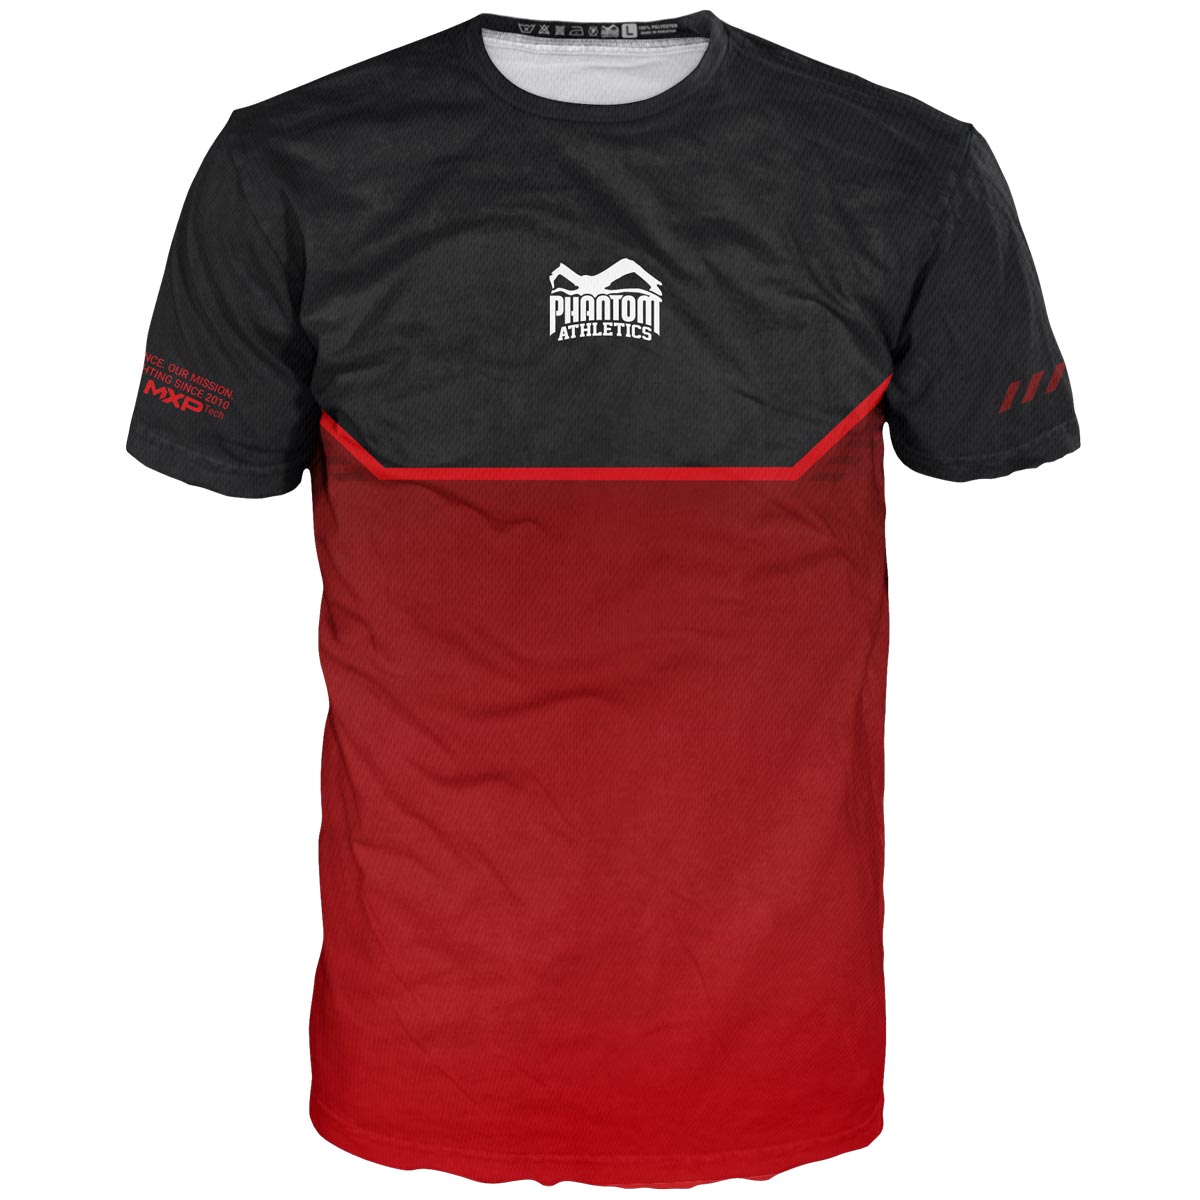 La nueva camiseta de artes marciales Phantom EVO para tu entrenamiento. Ultra cómodo de llevar y resistente al sudor. Ahora en la edición RED limitada.